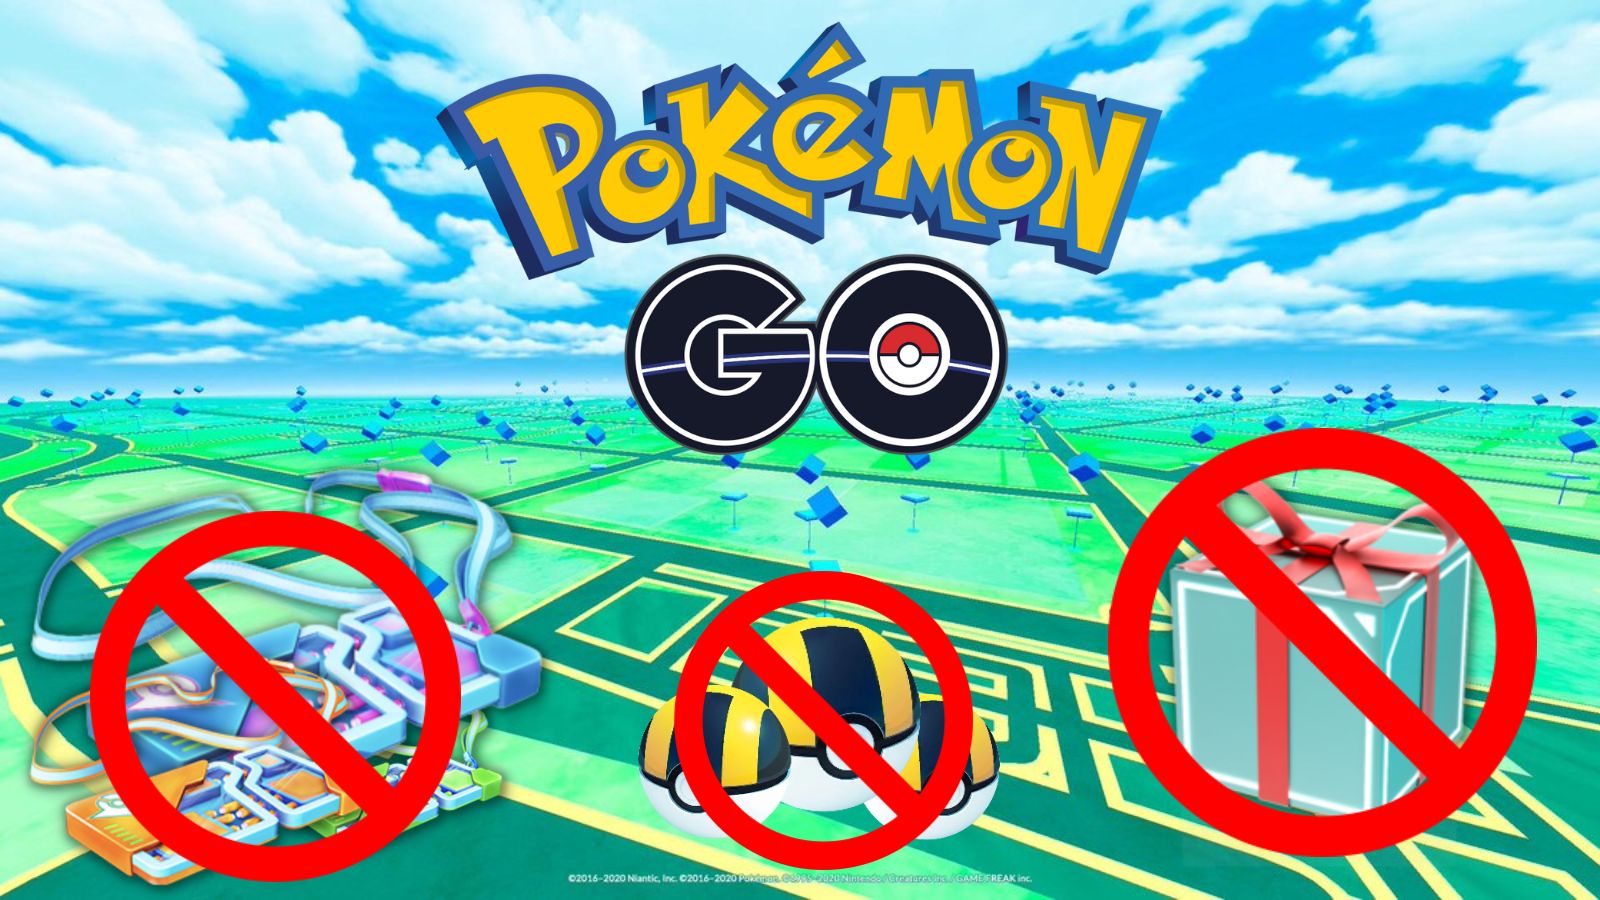 Pokemon Go-spillere kræver bedre kommunikation fra Niantic, efter fan-favoritfunktioner forsvinder